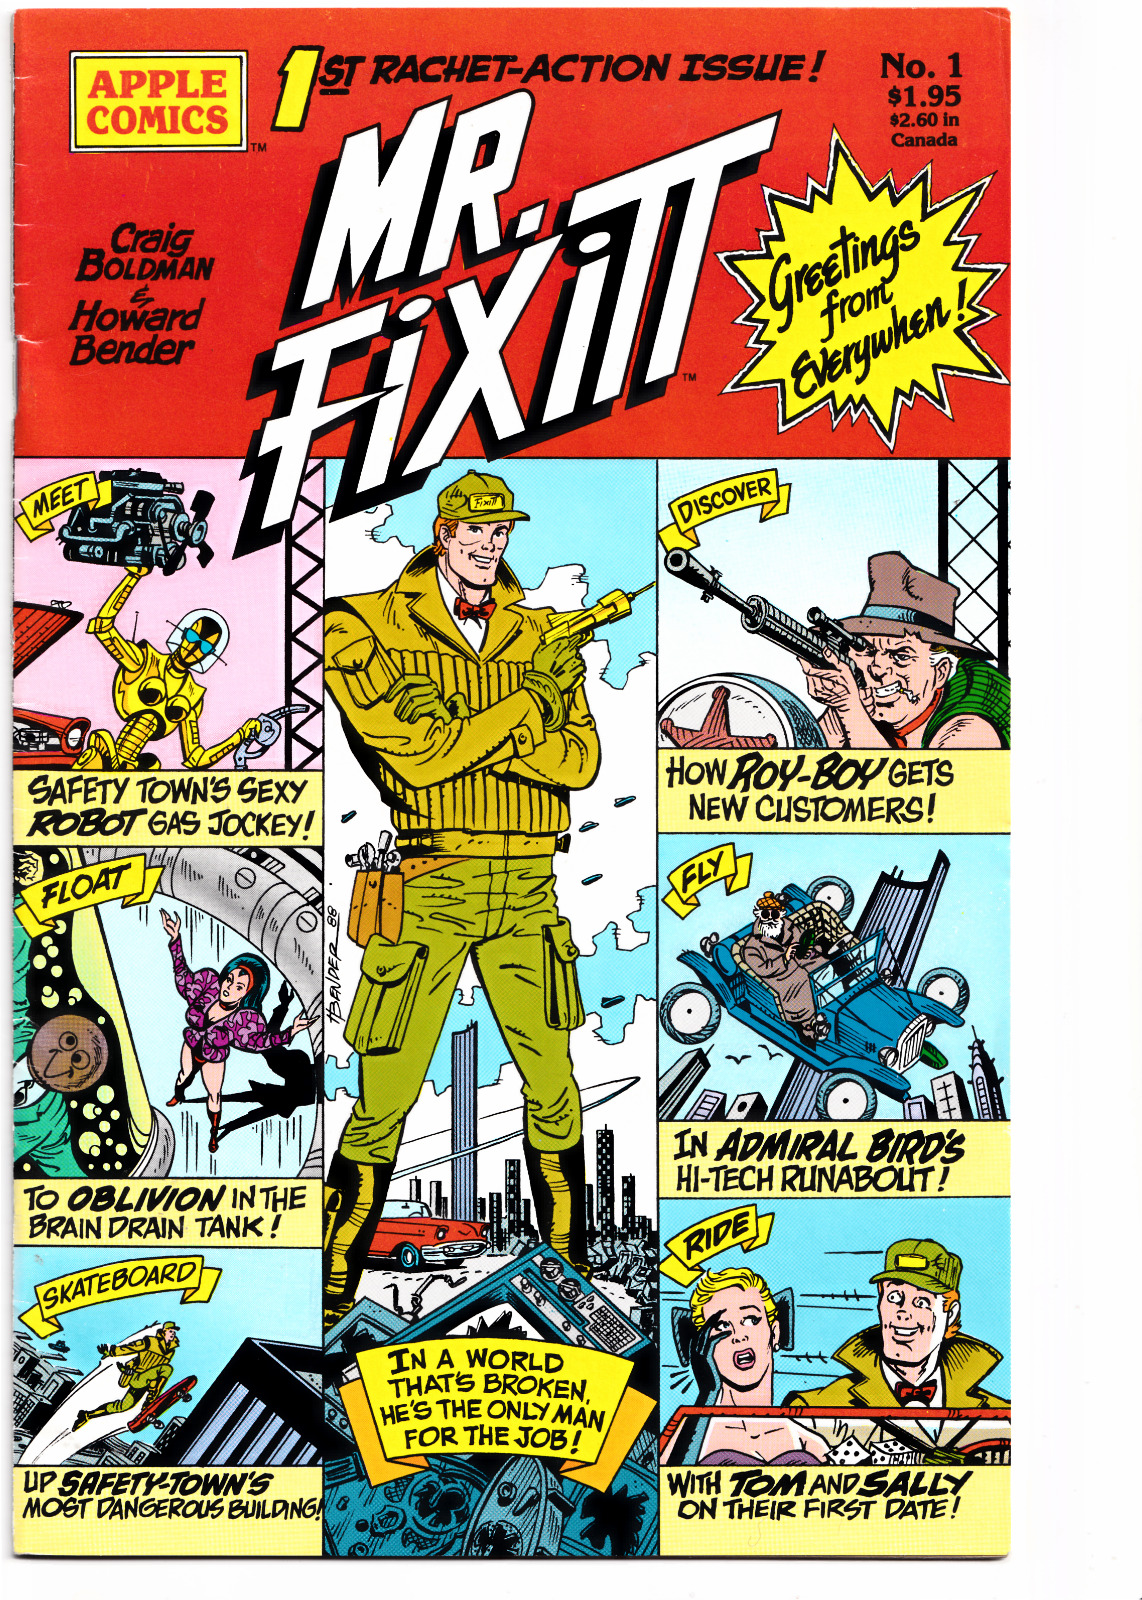 Mr. Fixitt #1 1989 Apple Comics